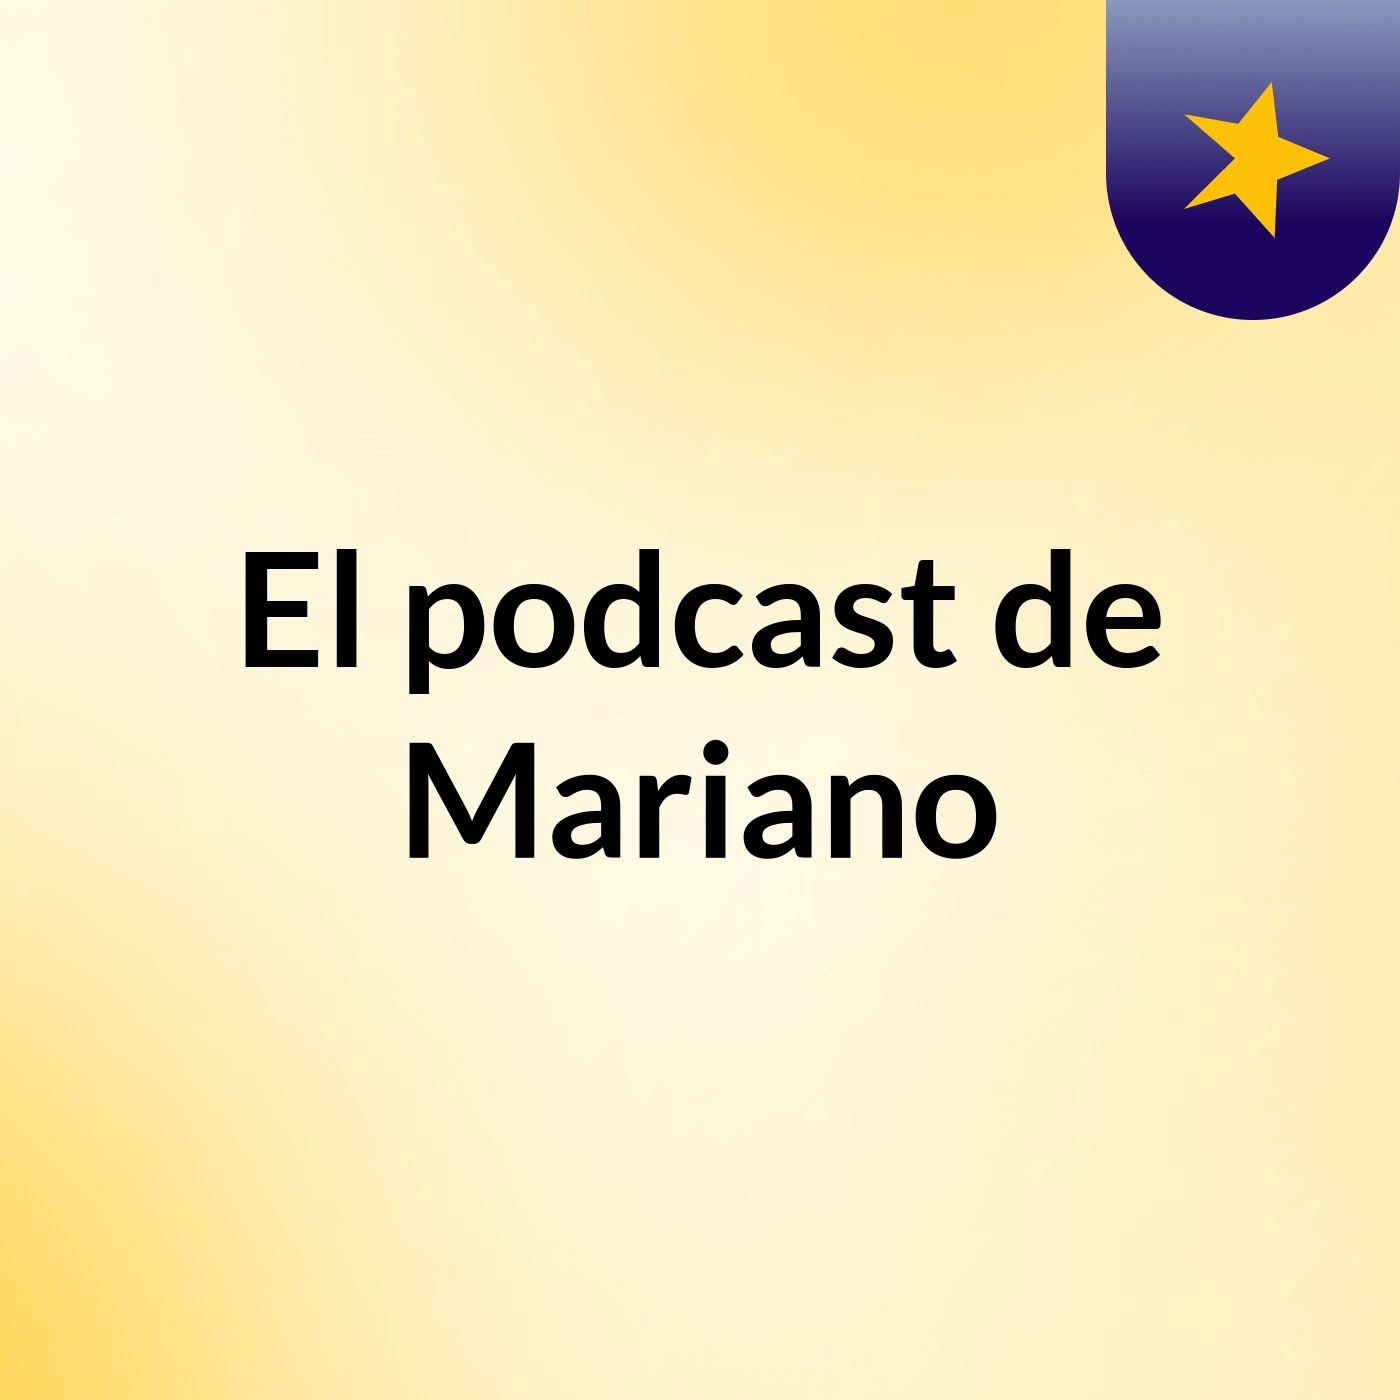 Episodio 4 - El podcast de Mariano